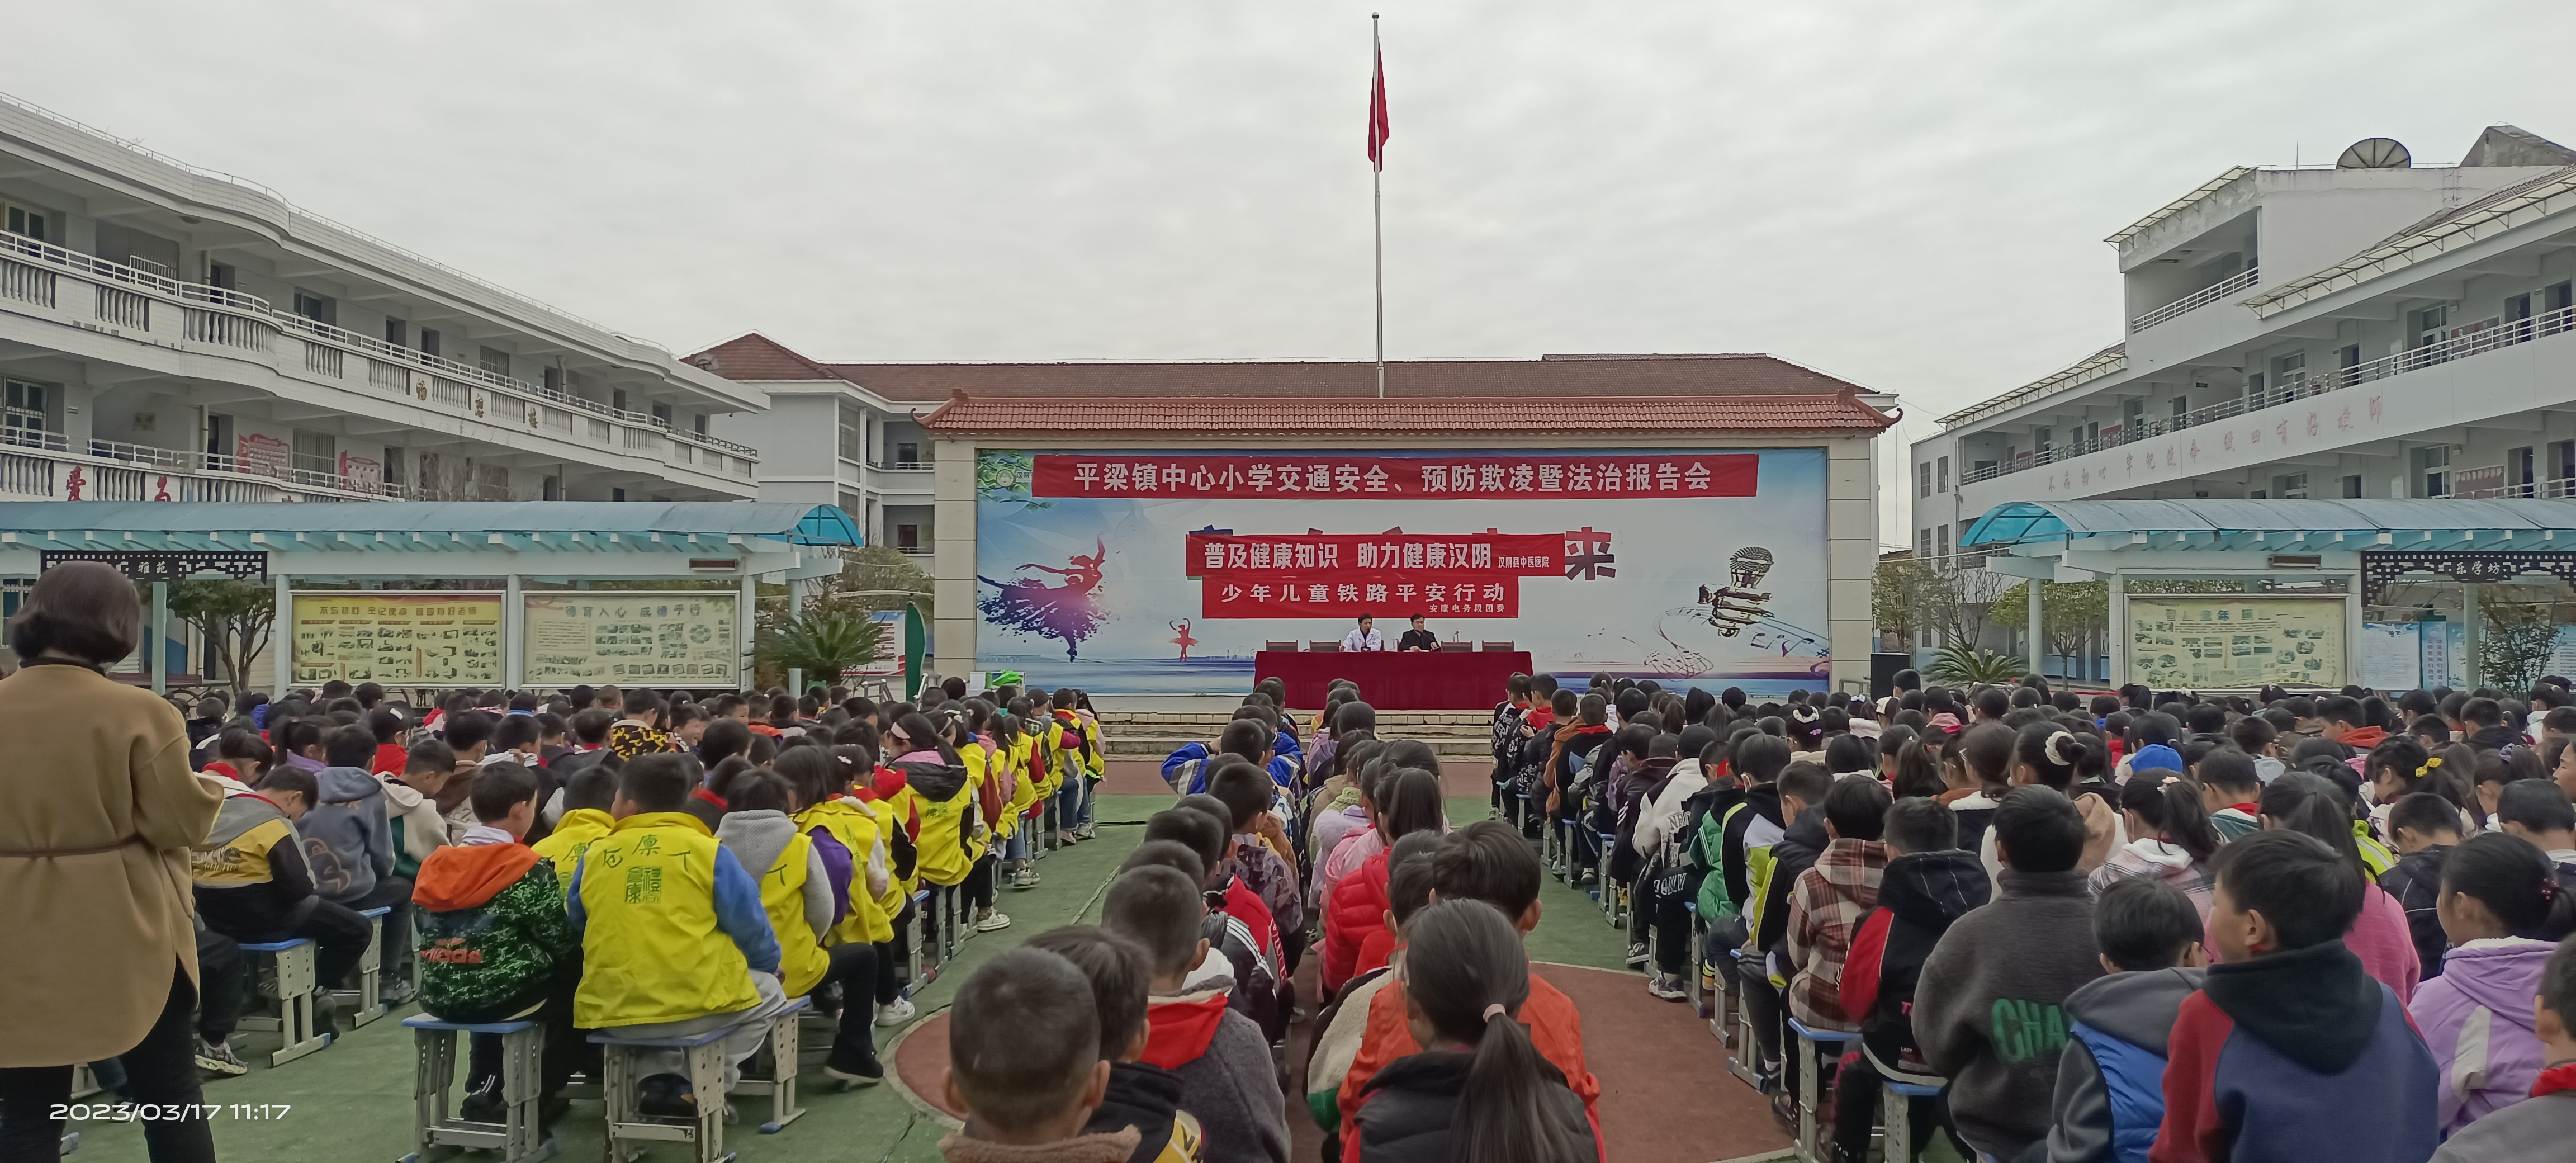 汉阴县平梁镇中心小学举行预防“甲型流感”知识讲座 